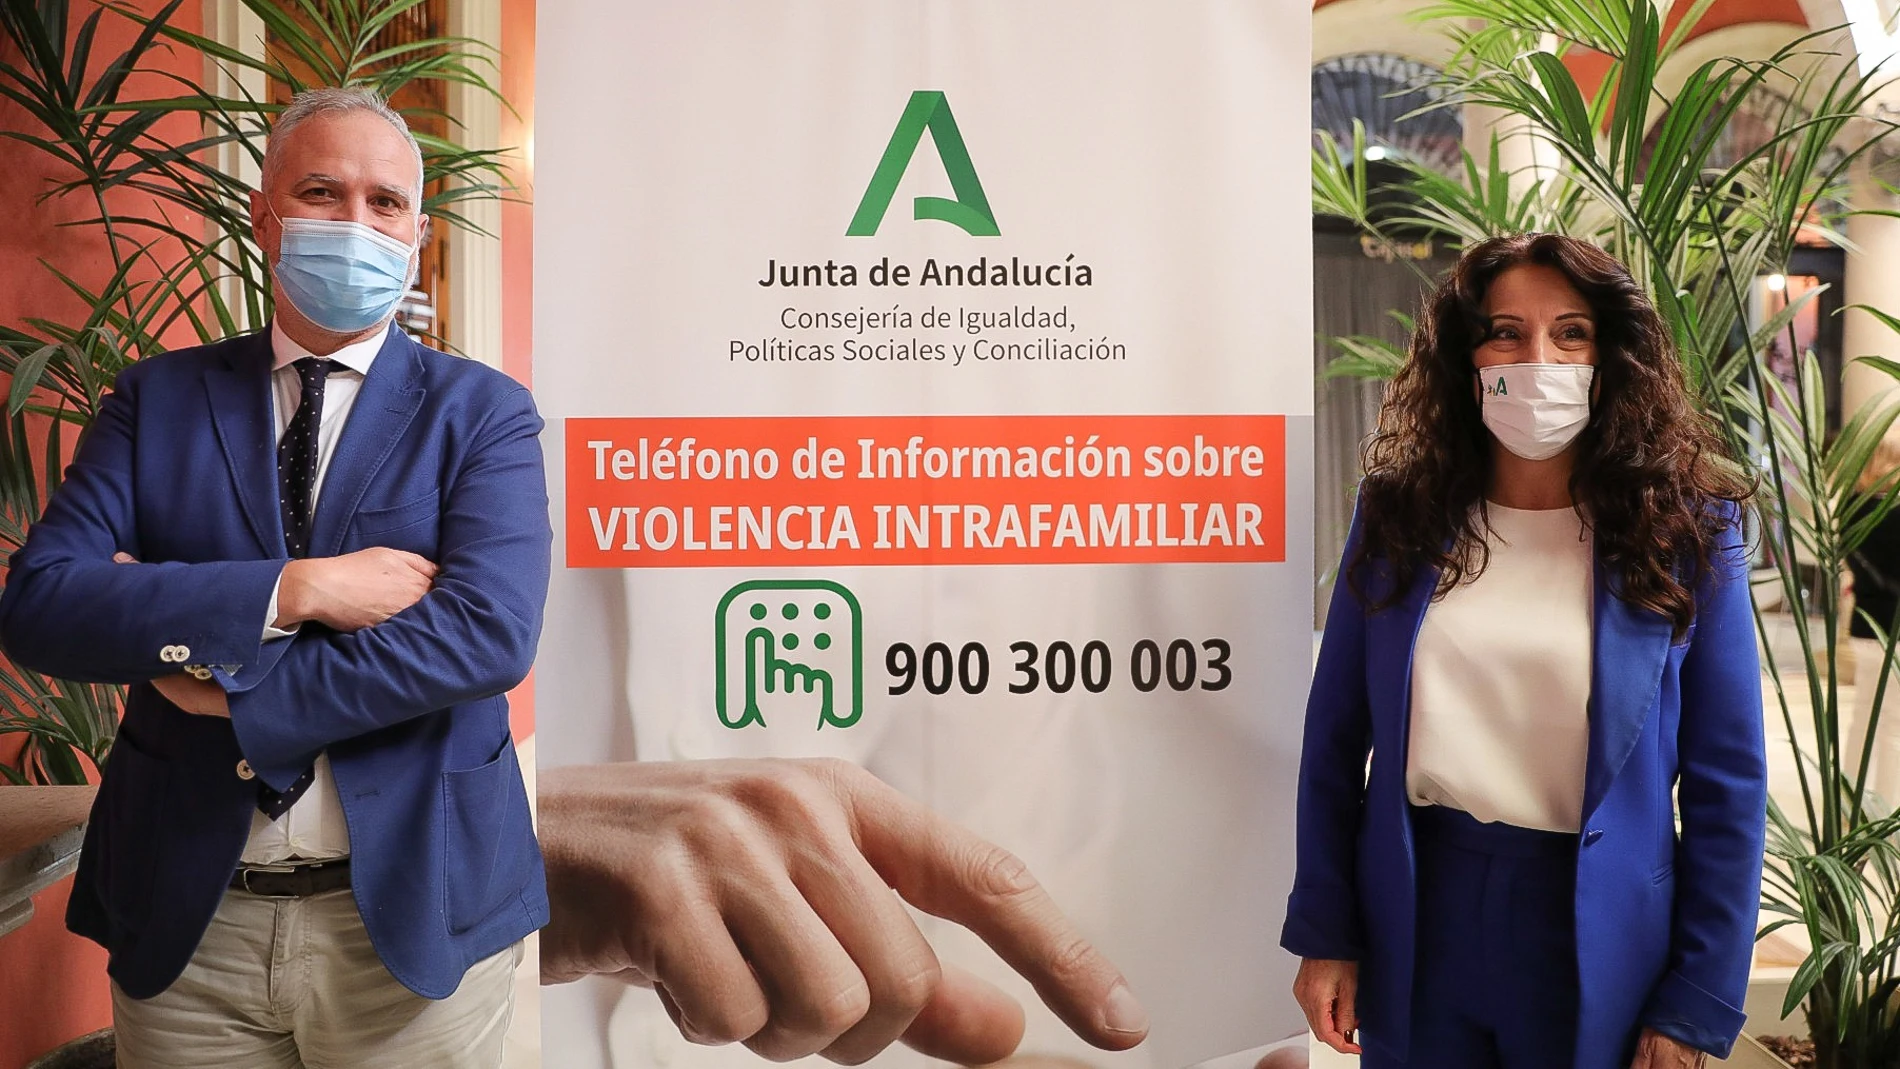 El director de la Agencia de Servicios Sociales, Víctor Bellido, y la consejera de Igualdad, Rocío Ruiz